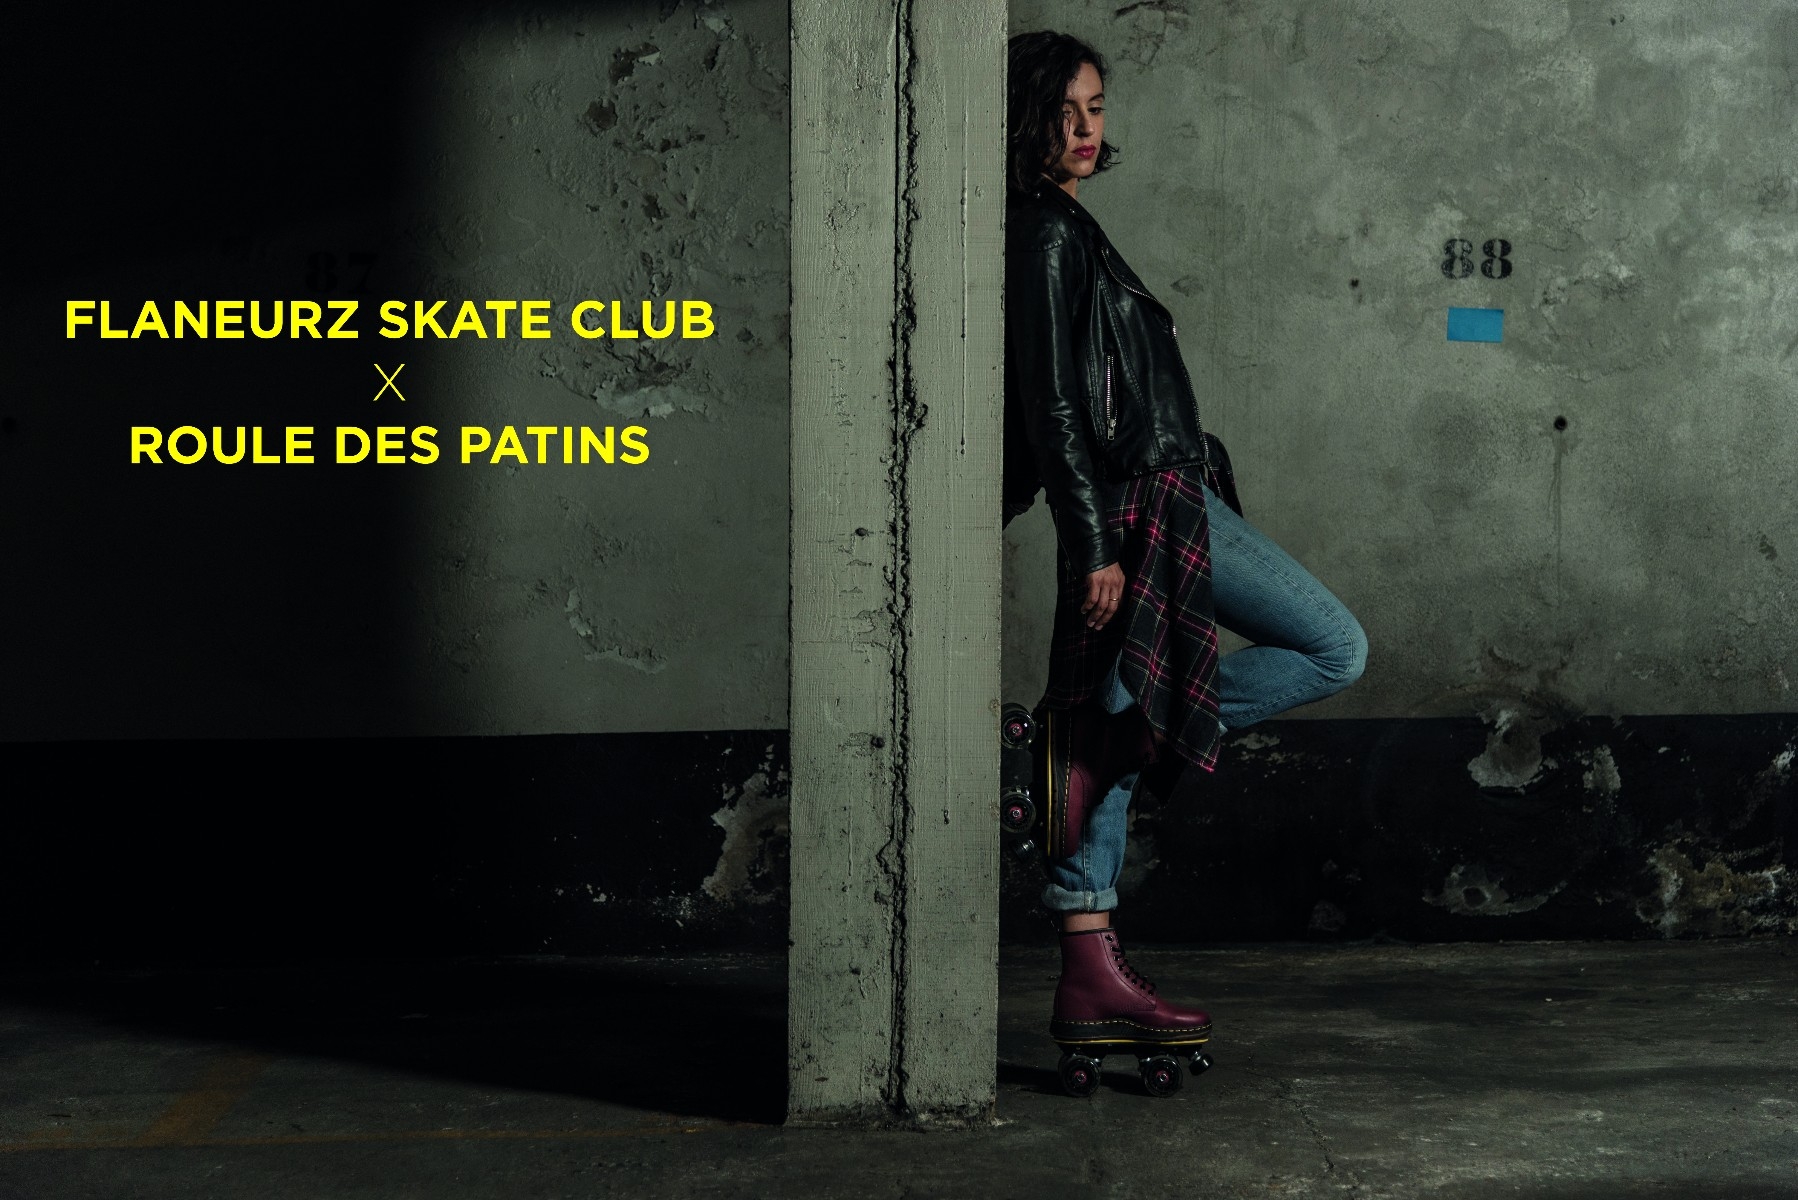 Flaneurz Skate Club x Roule des Patins